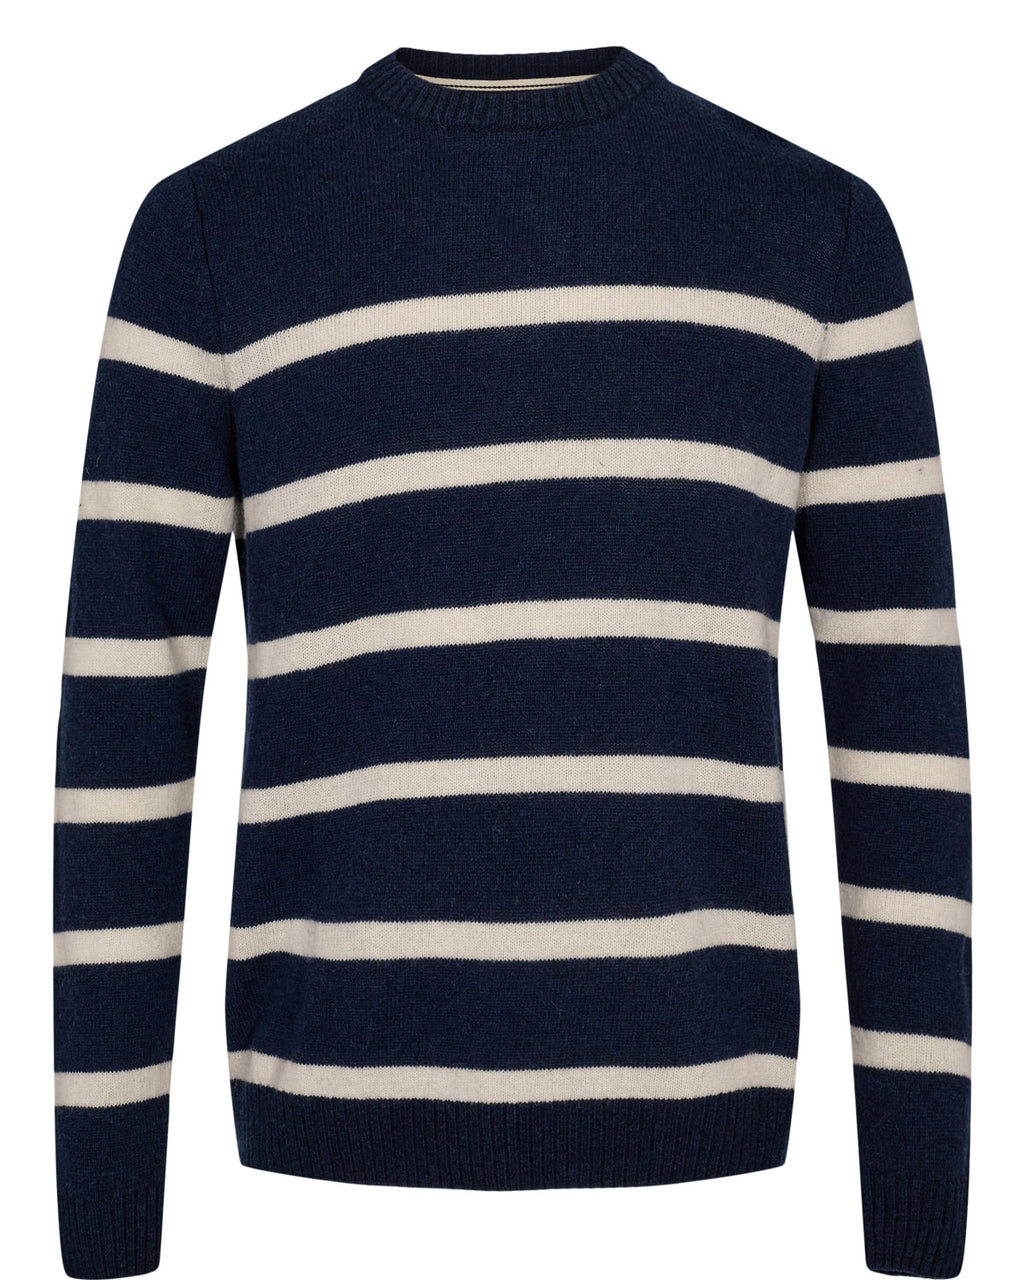 g  Lammwolle Pullover mit Streifen Blau Weiß von der Marke Anerkjendt